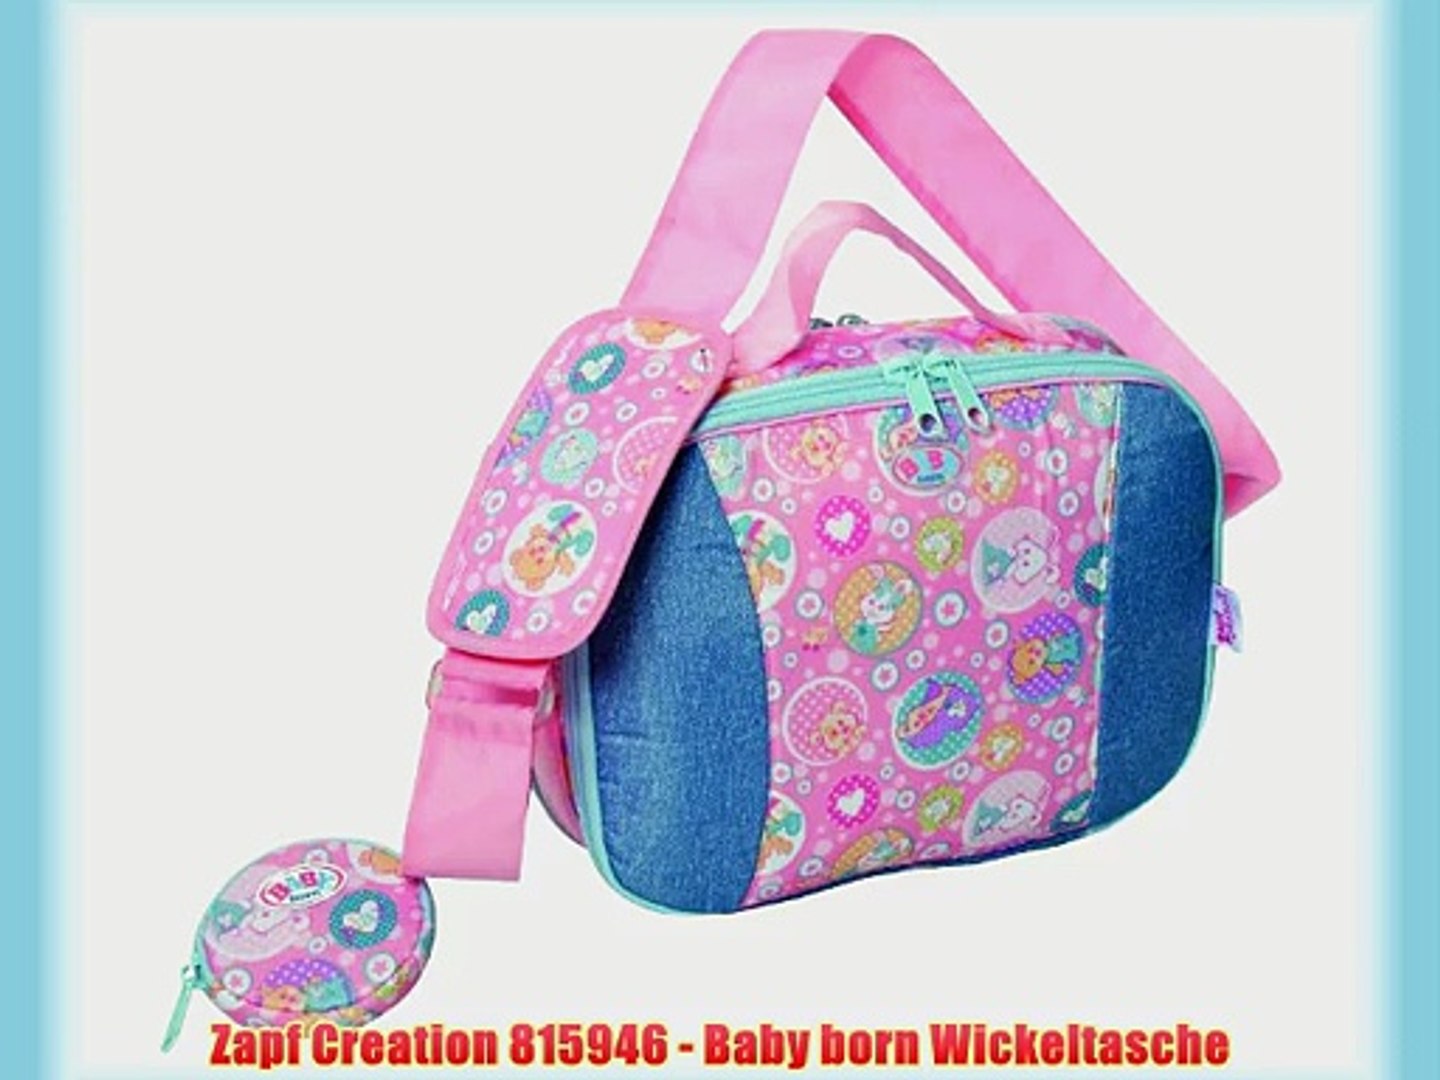 Zapf Creation 815946 - Baby born Wickeltasche - video Dailymotion